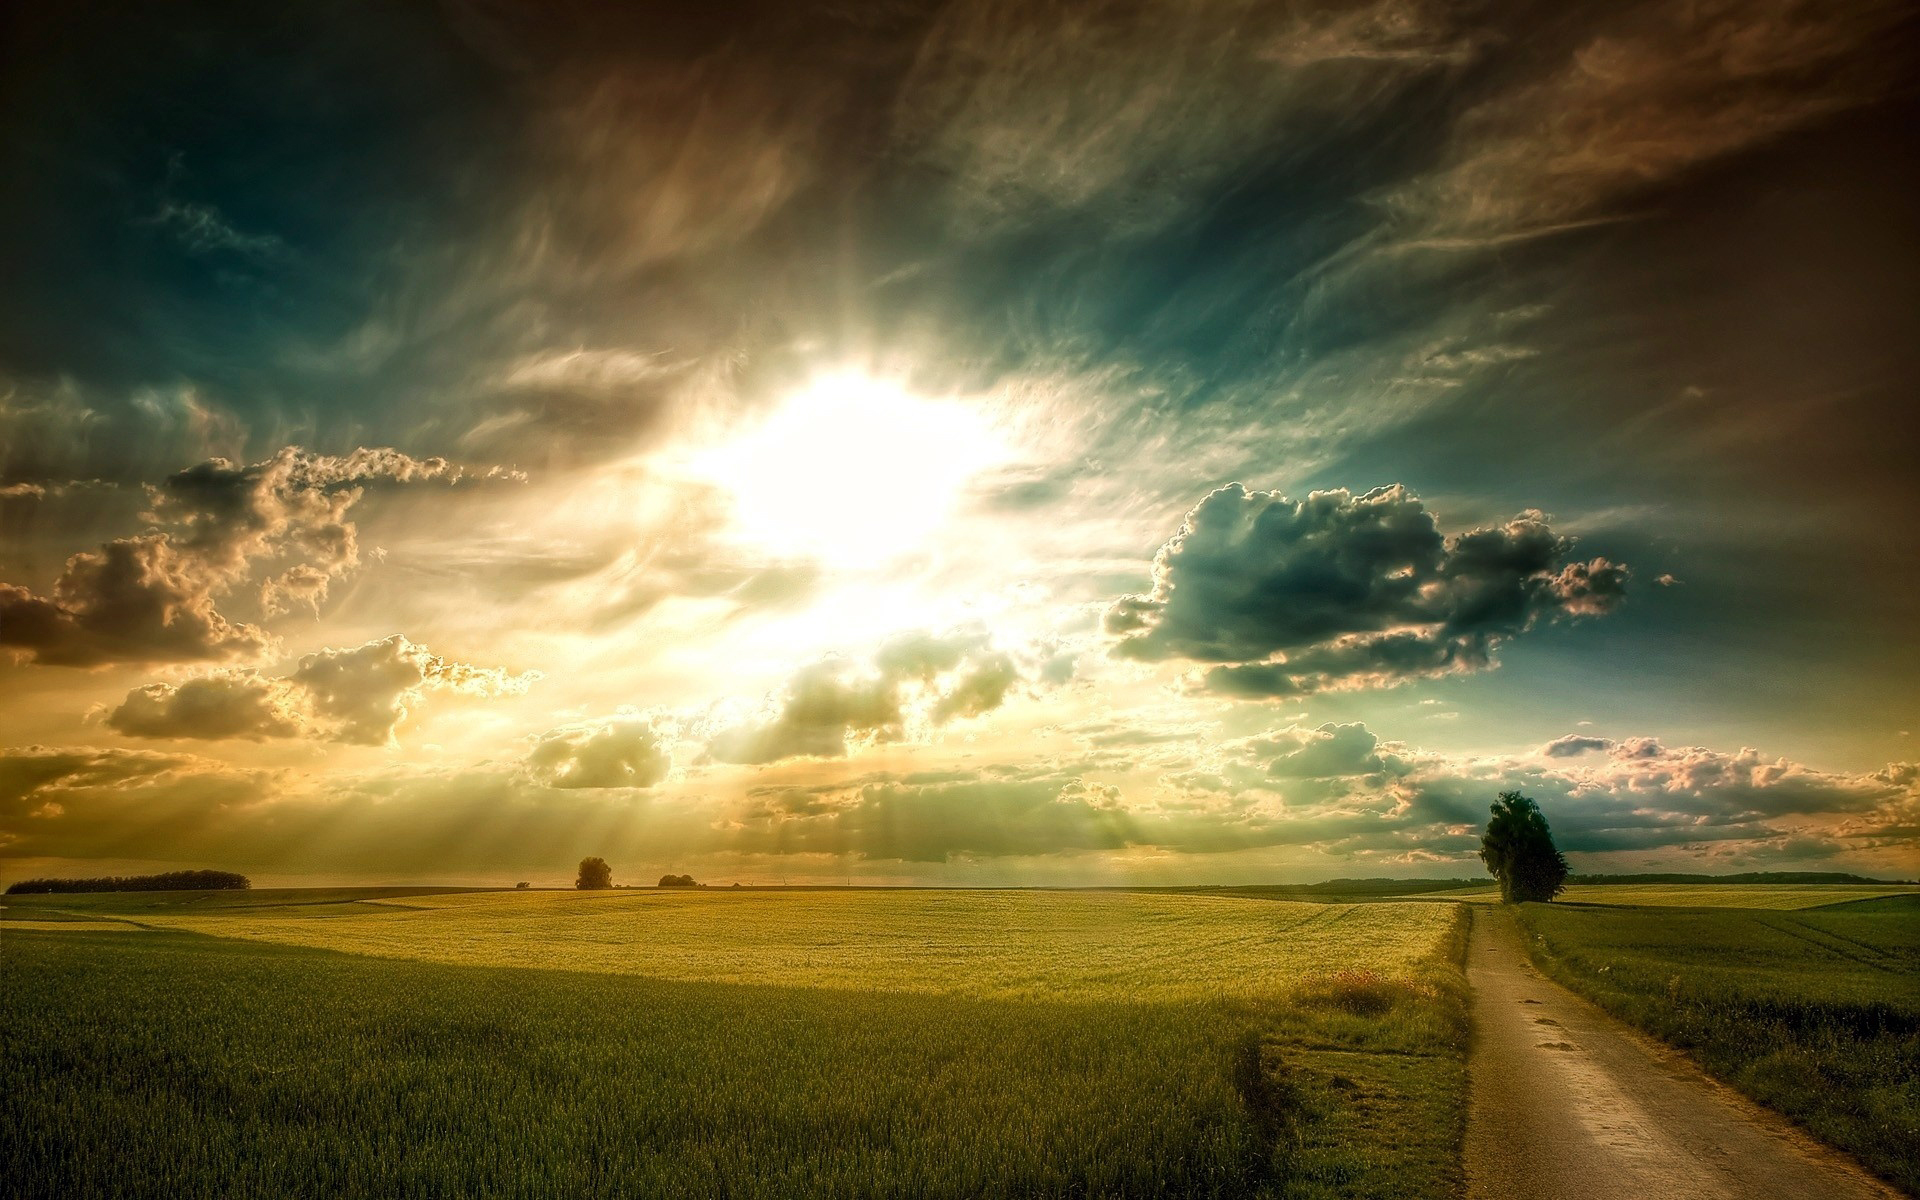 plains, Fields, Grass, Road, Tree, Sky, Clouds, Sun, Rays, Light, Dawn, Sunset, Landscapes, Sunlight, Fields Wallpaper